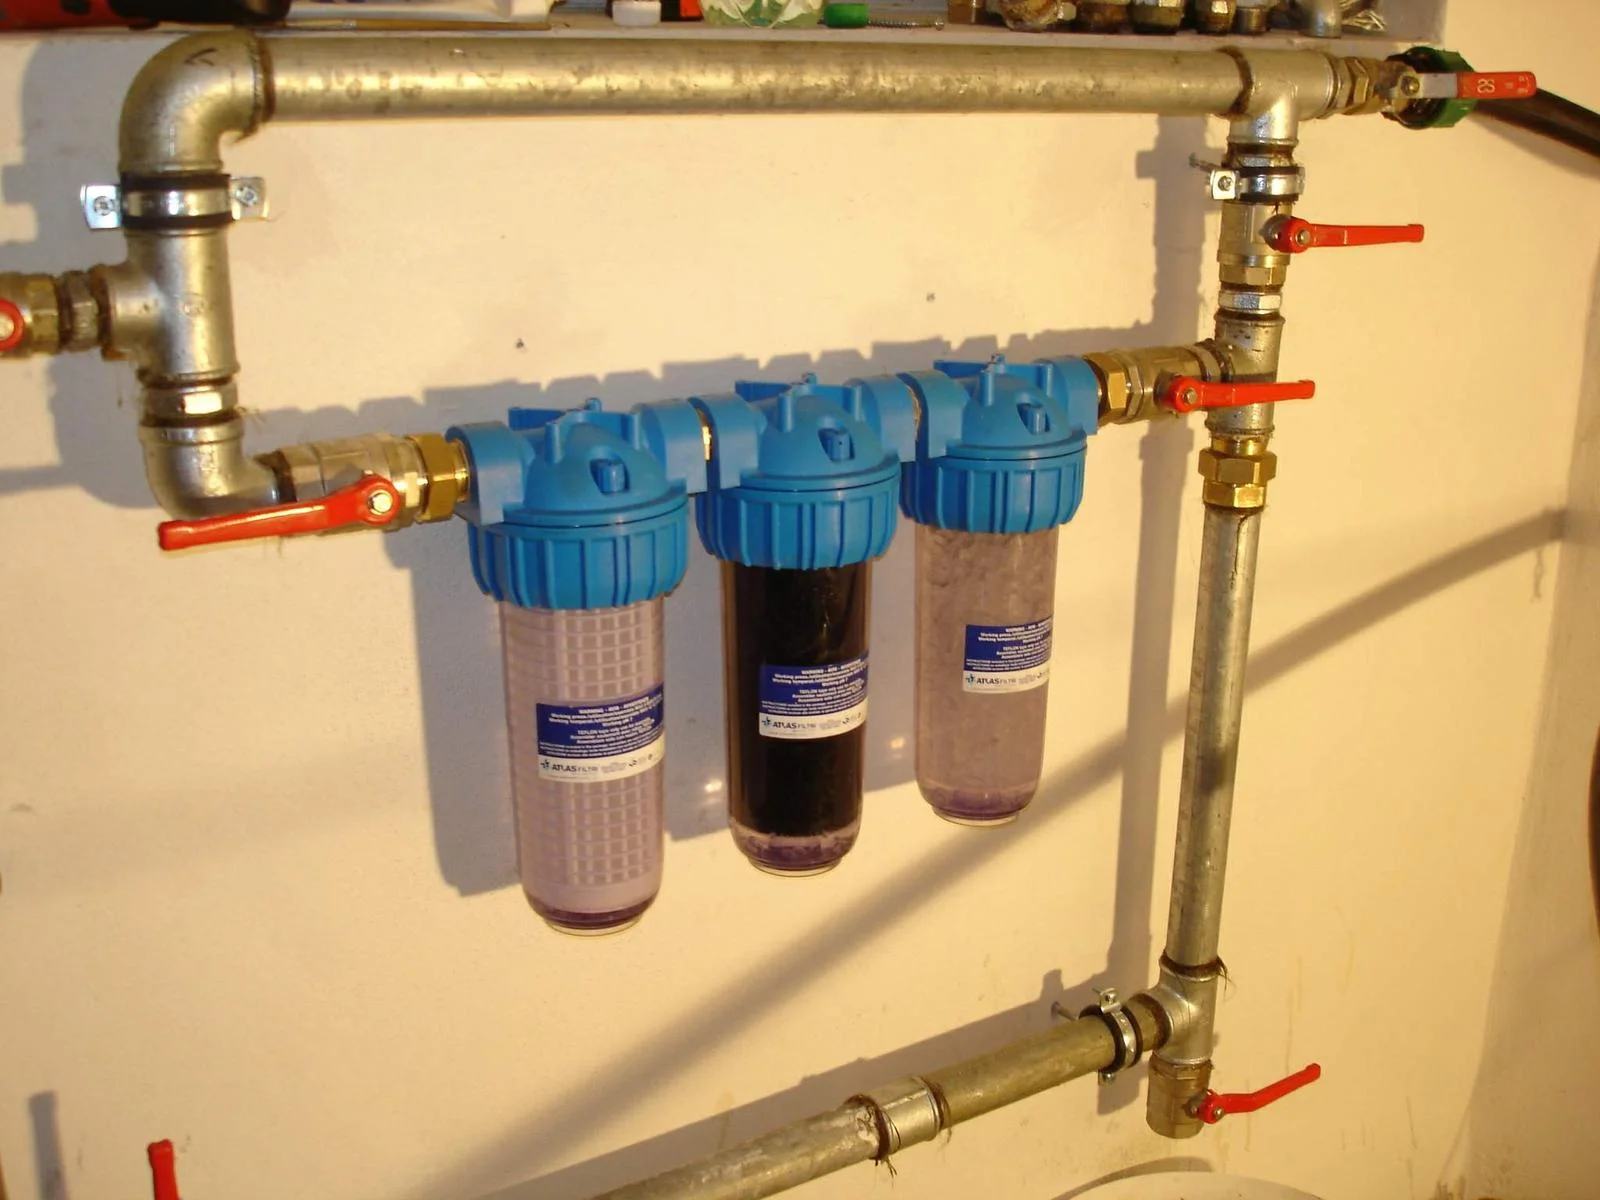 Фильтр механической очистки воды: водоочистка холодной и как выбрать систему фильтрации для квартиры, сетчатые устройства и другие методы, как отфильтровать механически